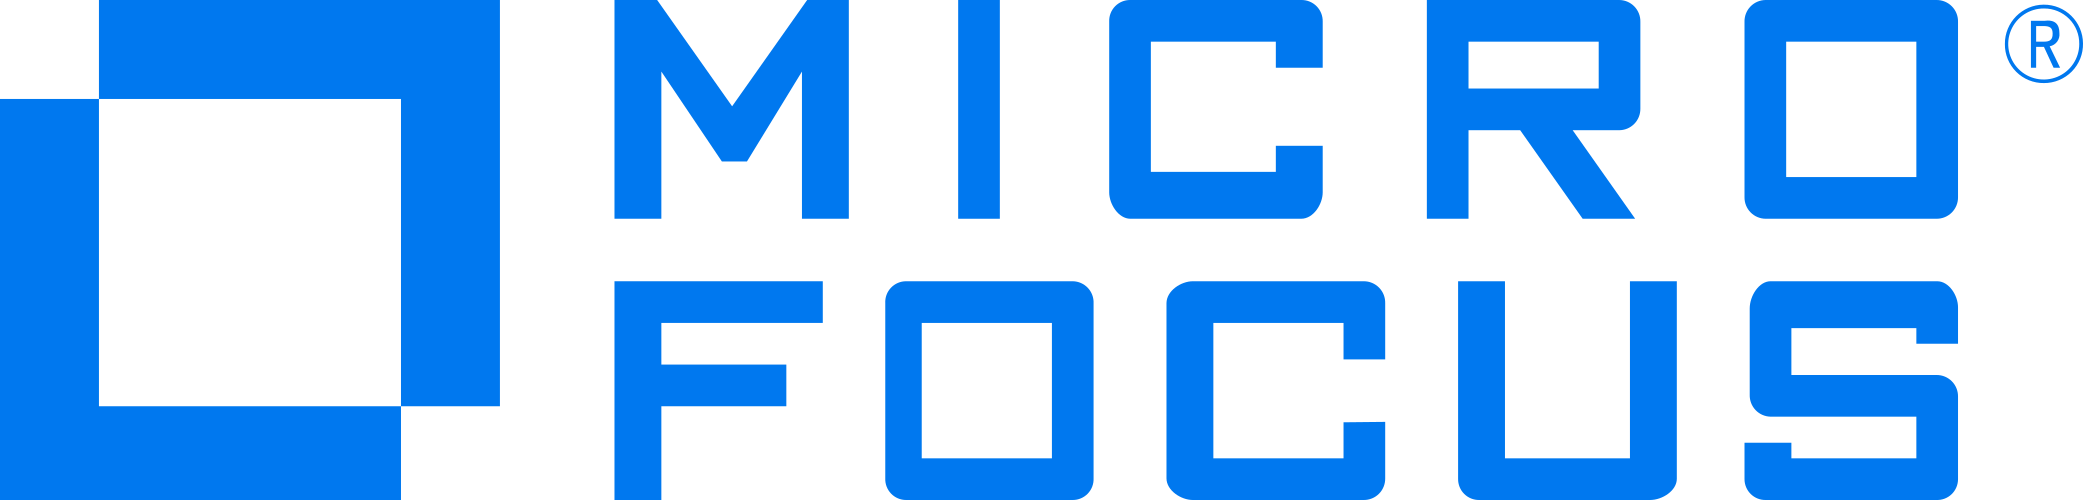 Alm Client Launcher - Micro Focus (2083x500)